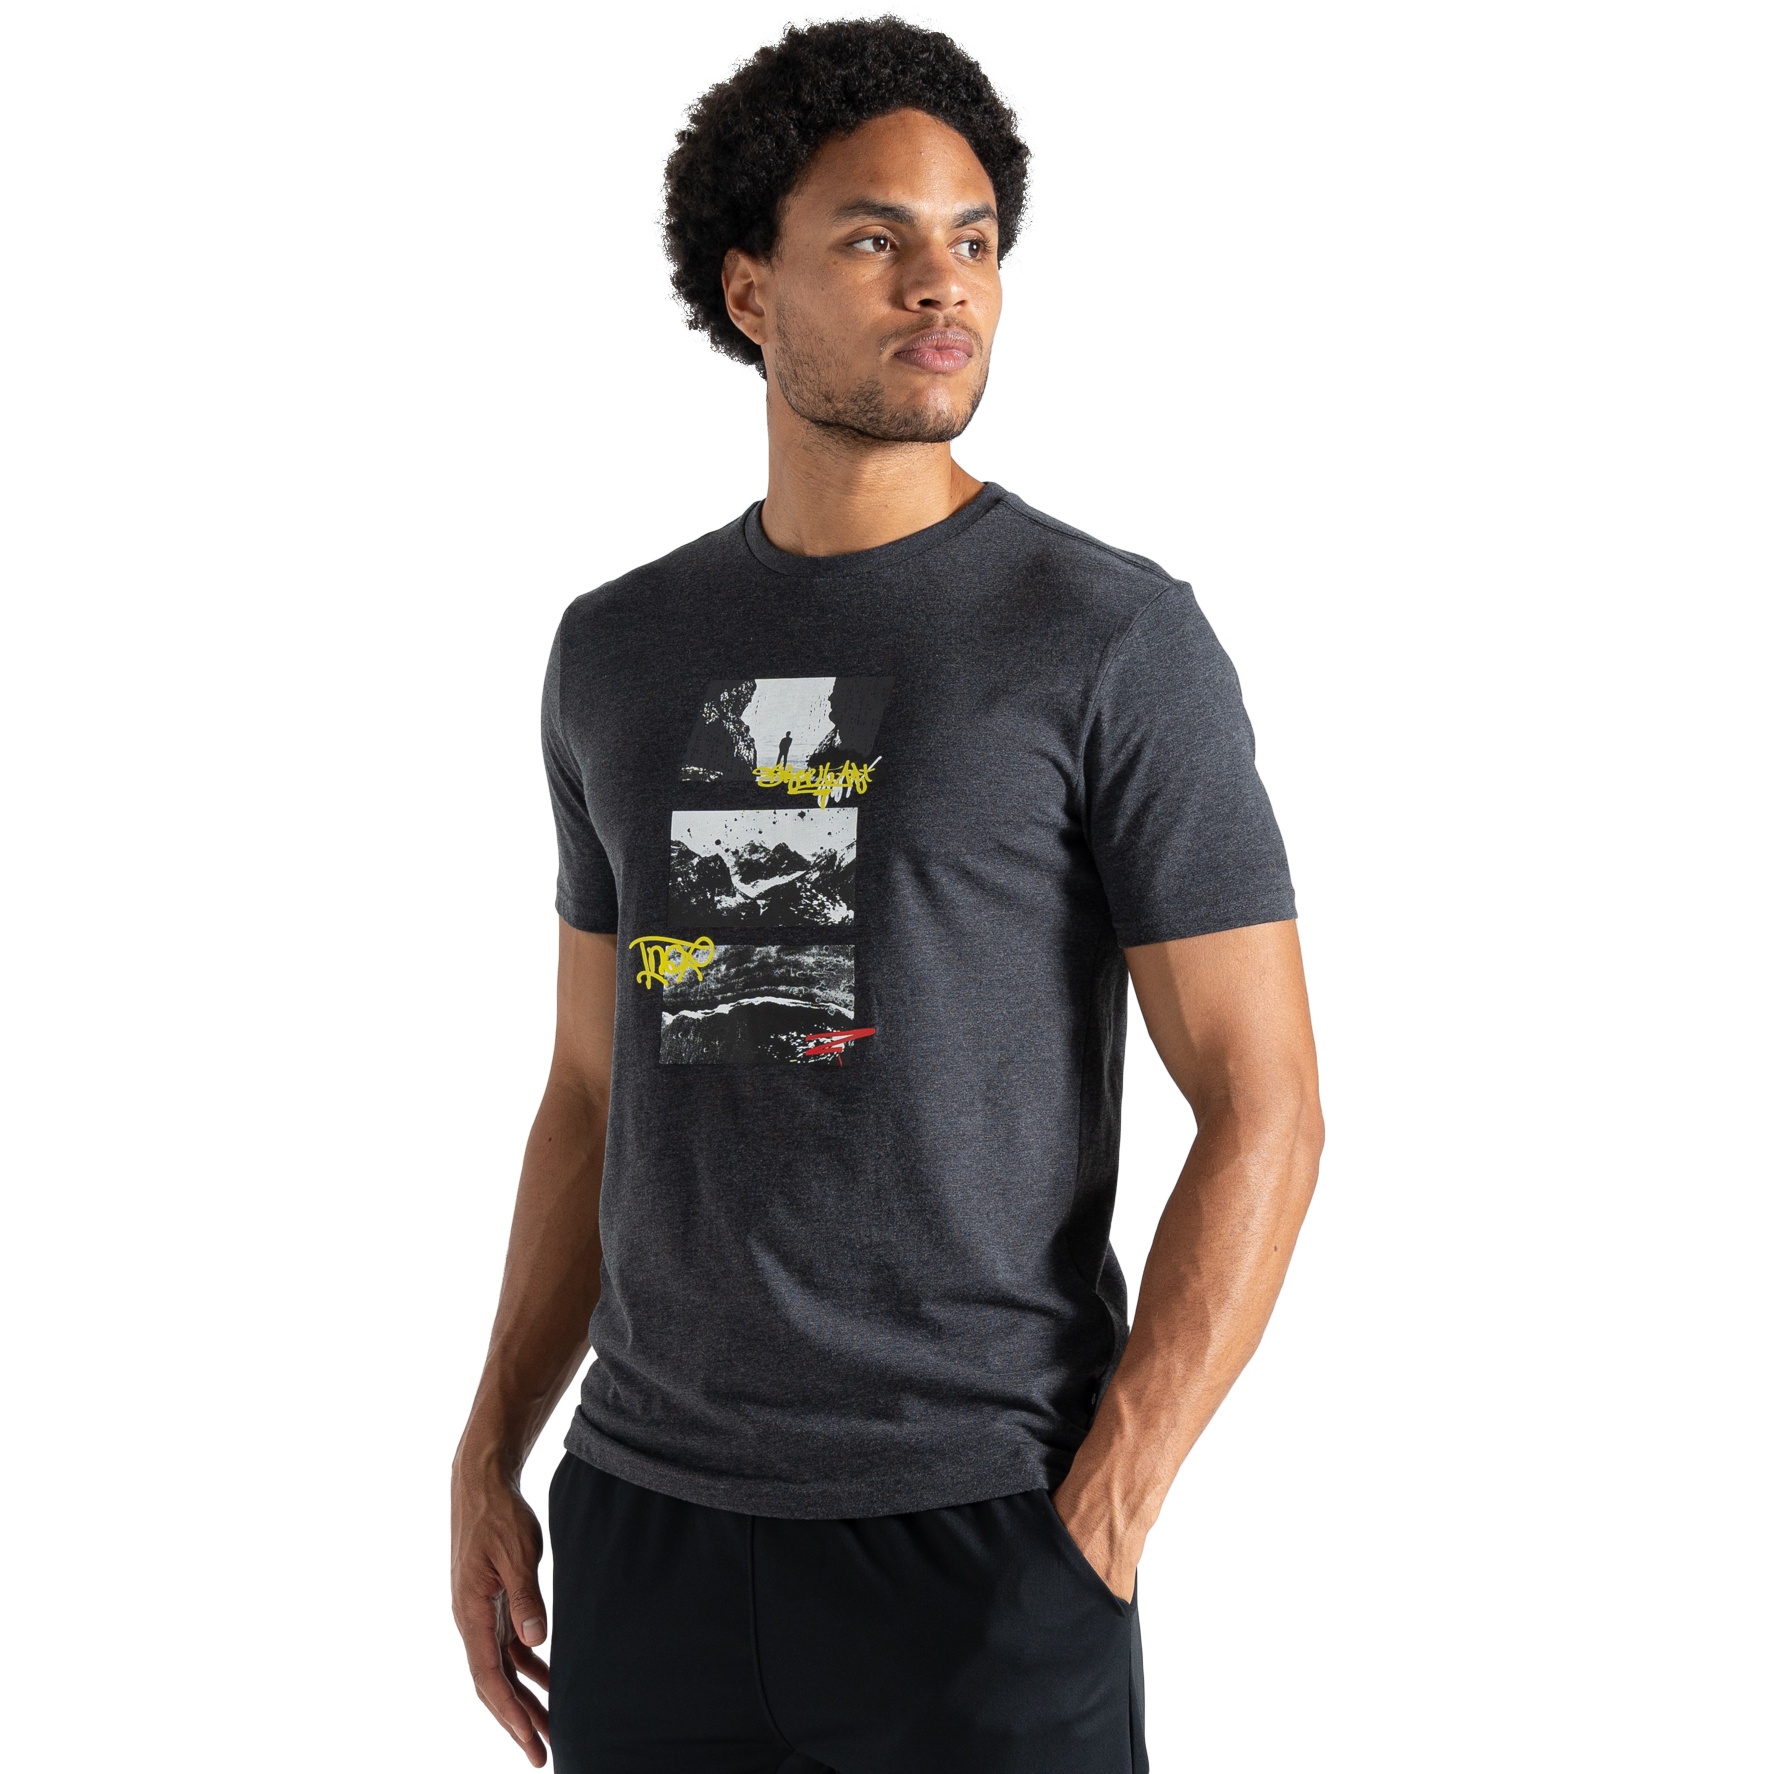 Produktbild von Dare 2b Movement II T-Shirt Herren - R39 Charcoal Grey Marl